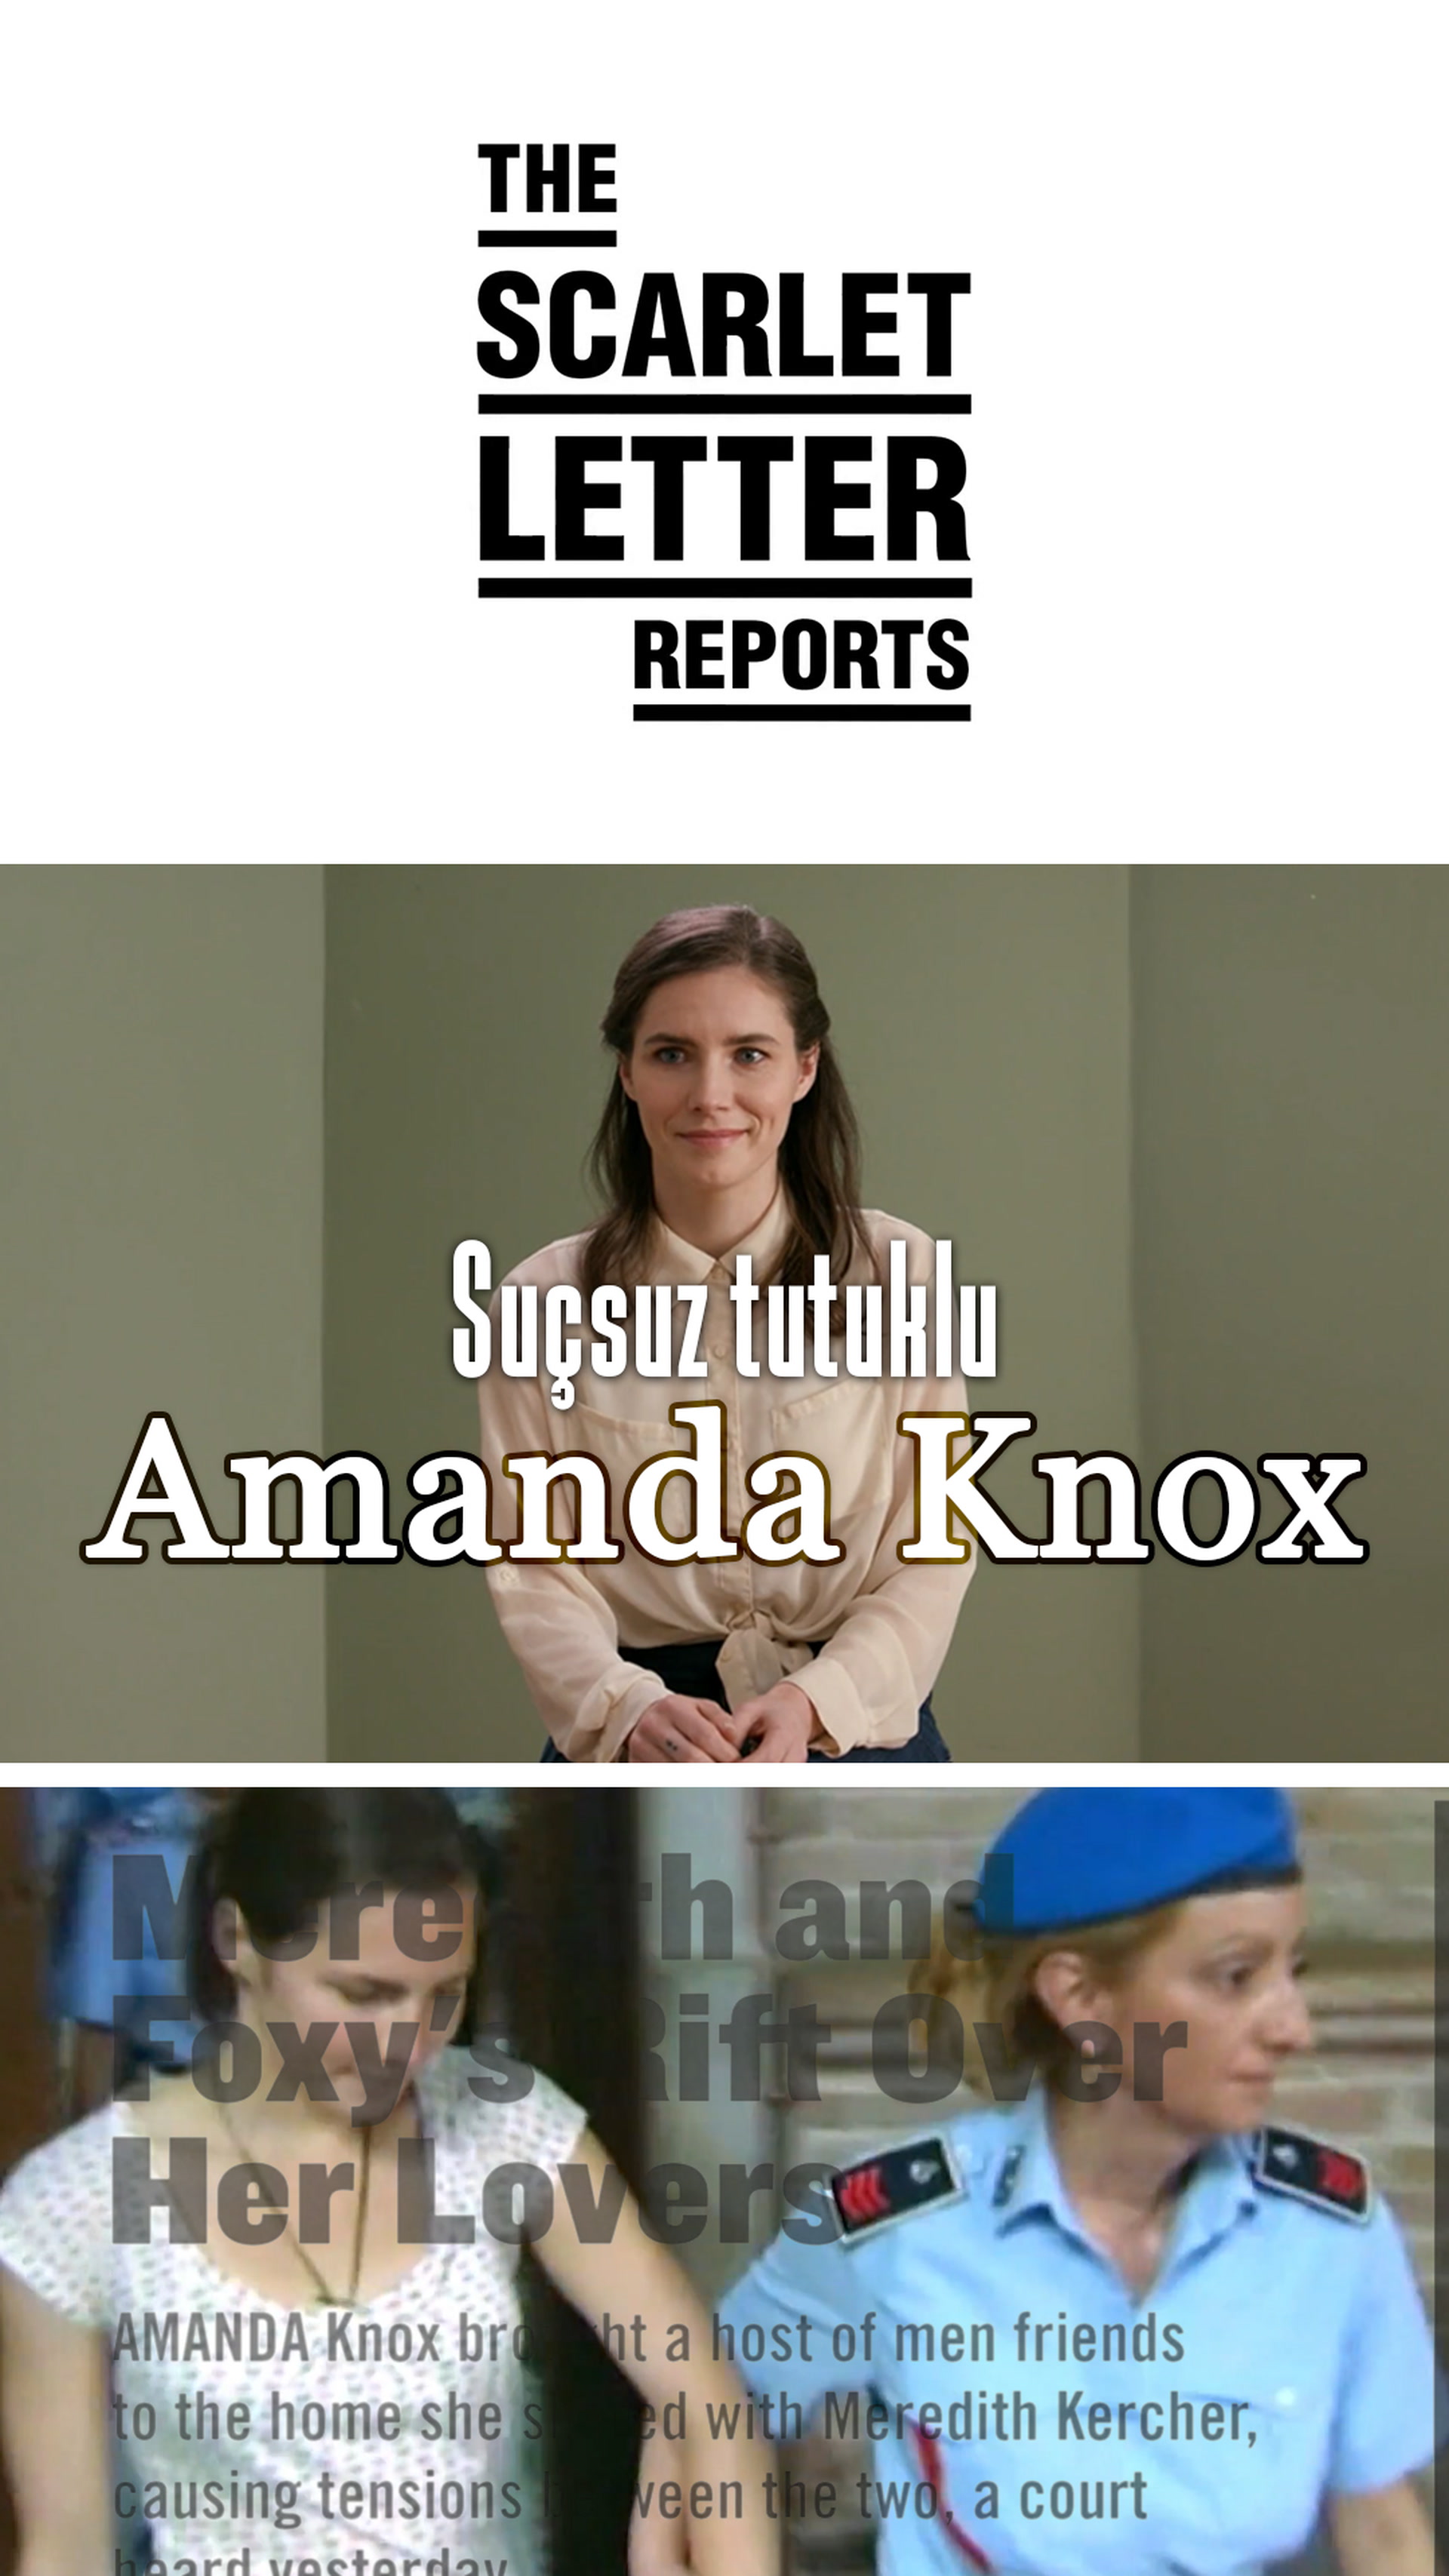 Suçsuz yere tutuklanan Amanda Knox  anlatıyor